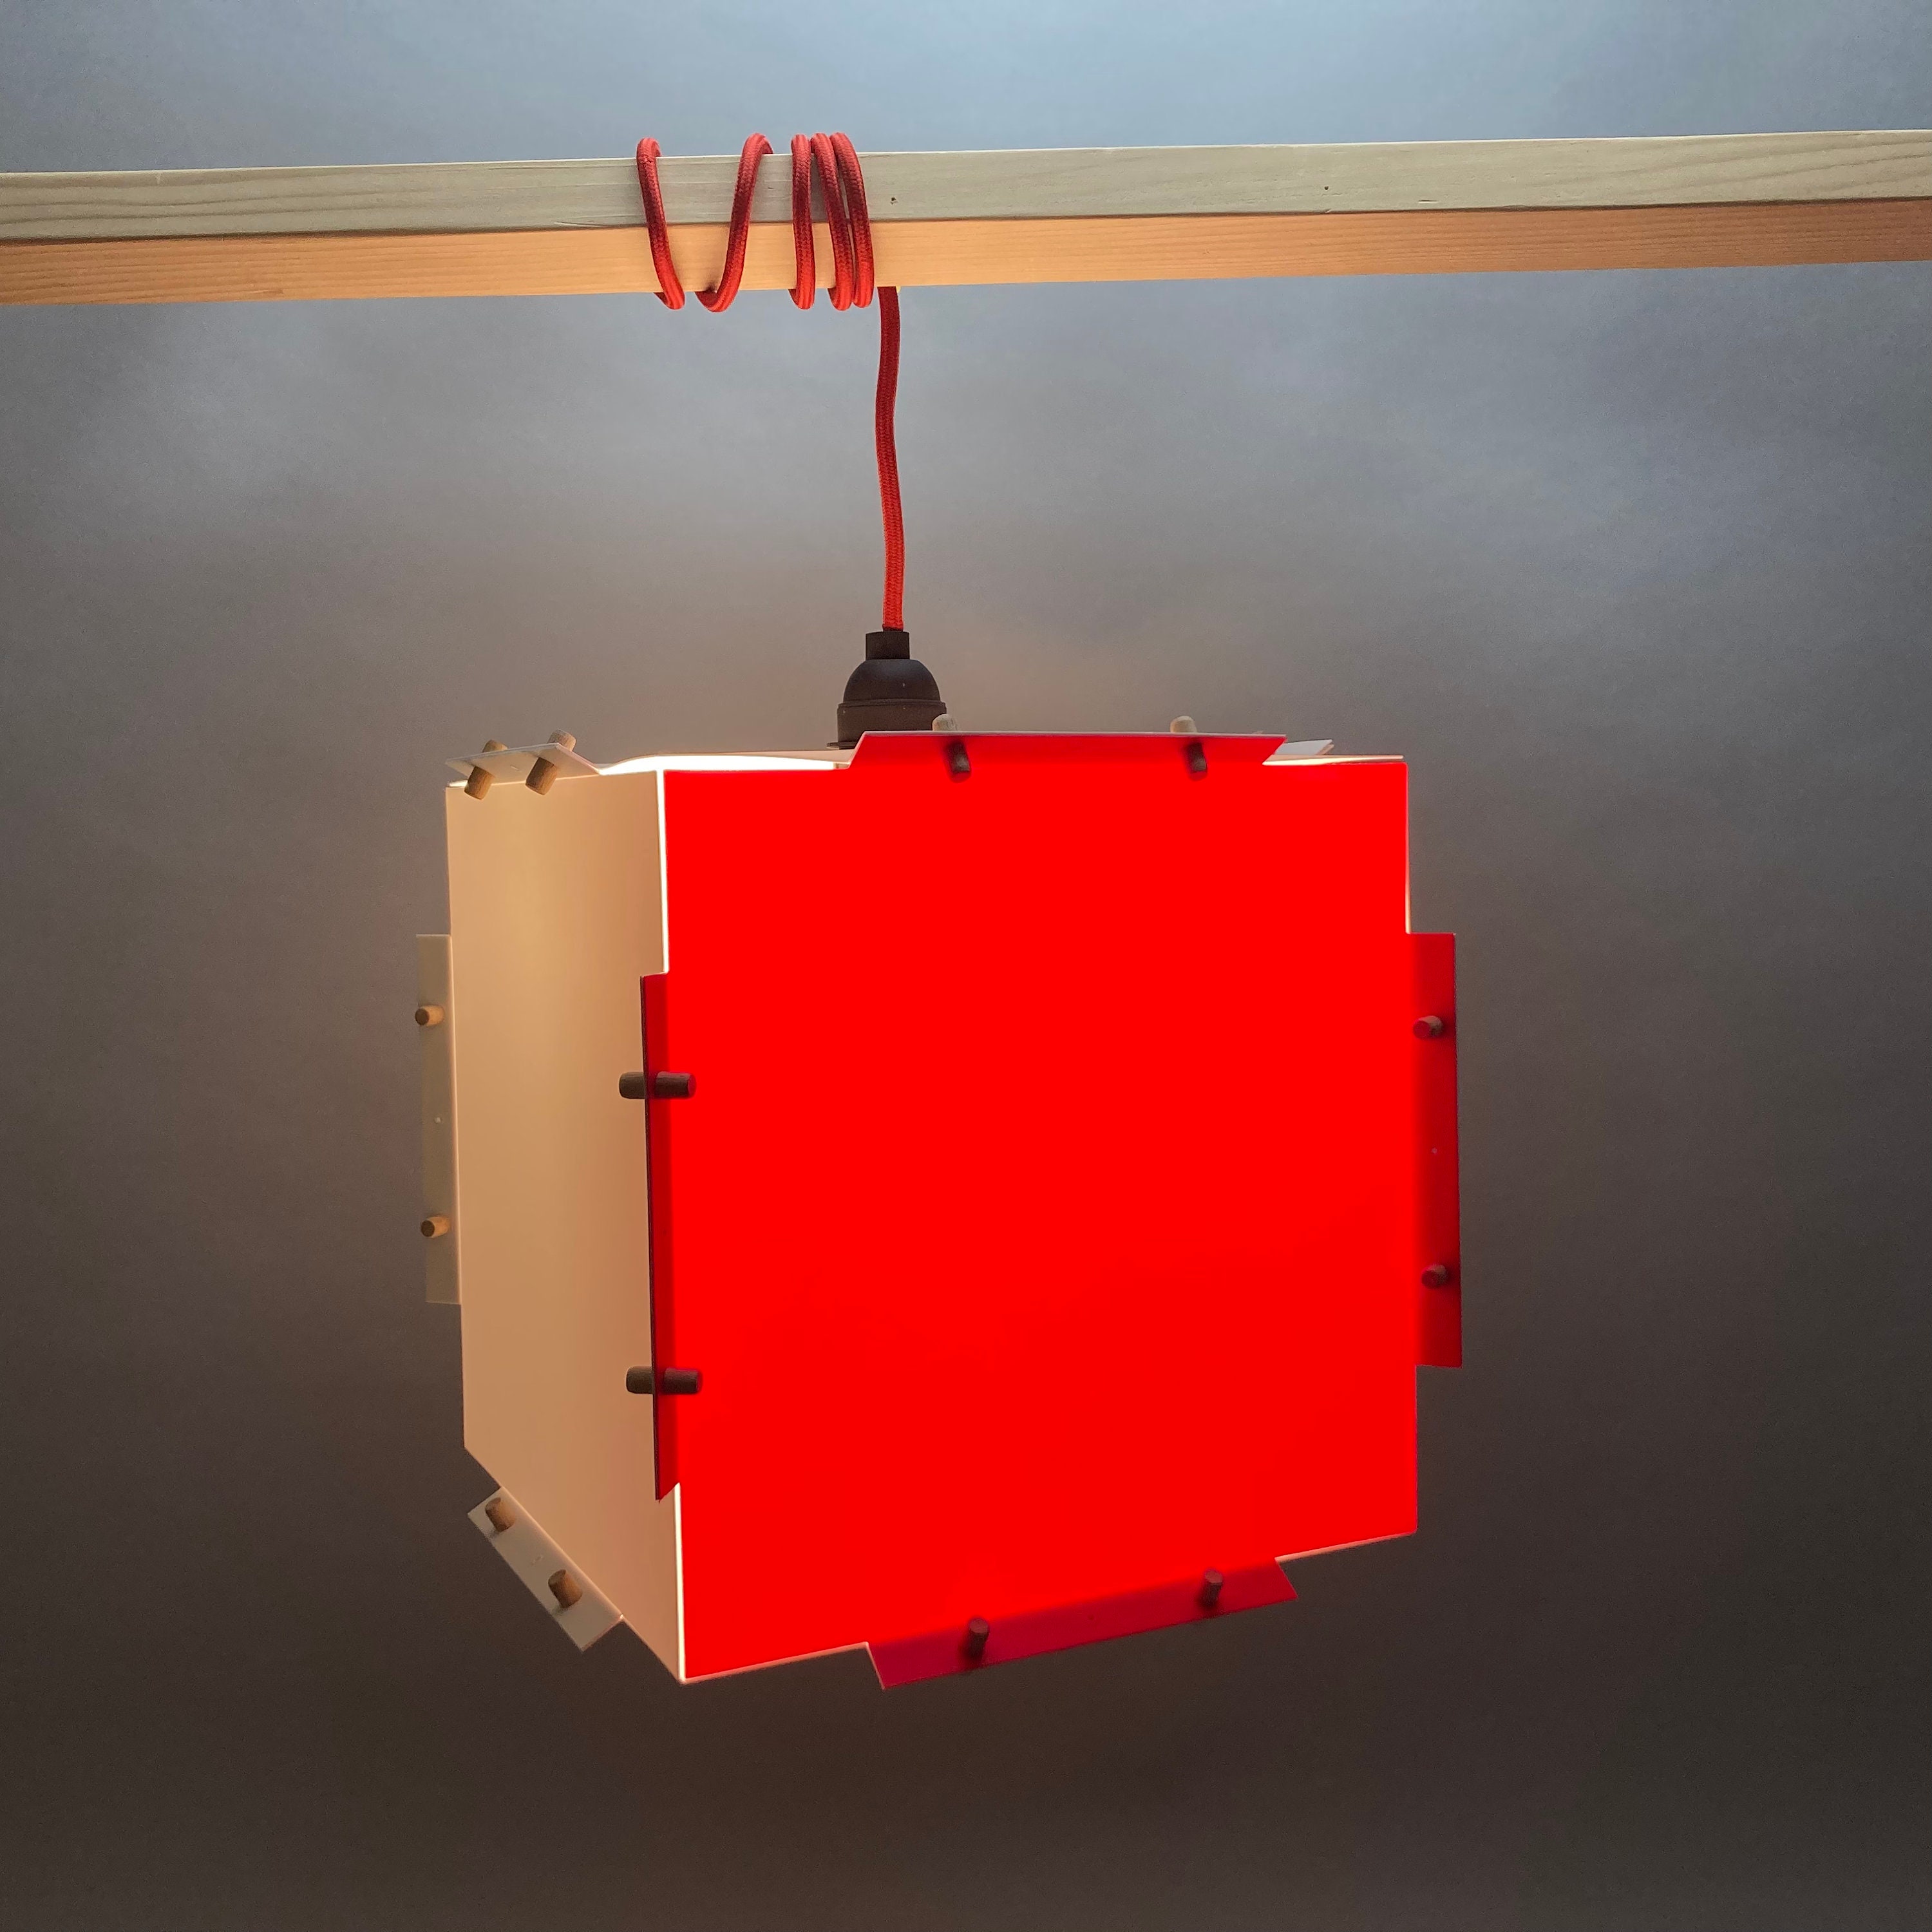 lampe couleur style origami facile à monter suspendre ou poser. cube lumineux rouge et blanc. luminaire design minimaliste incassable.